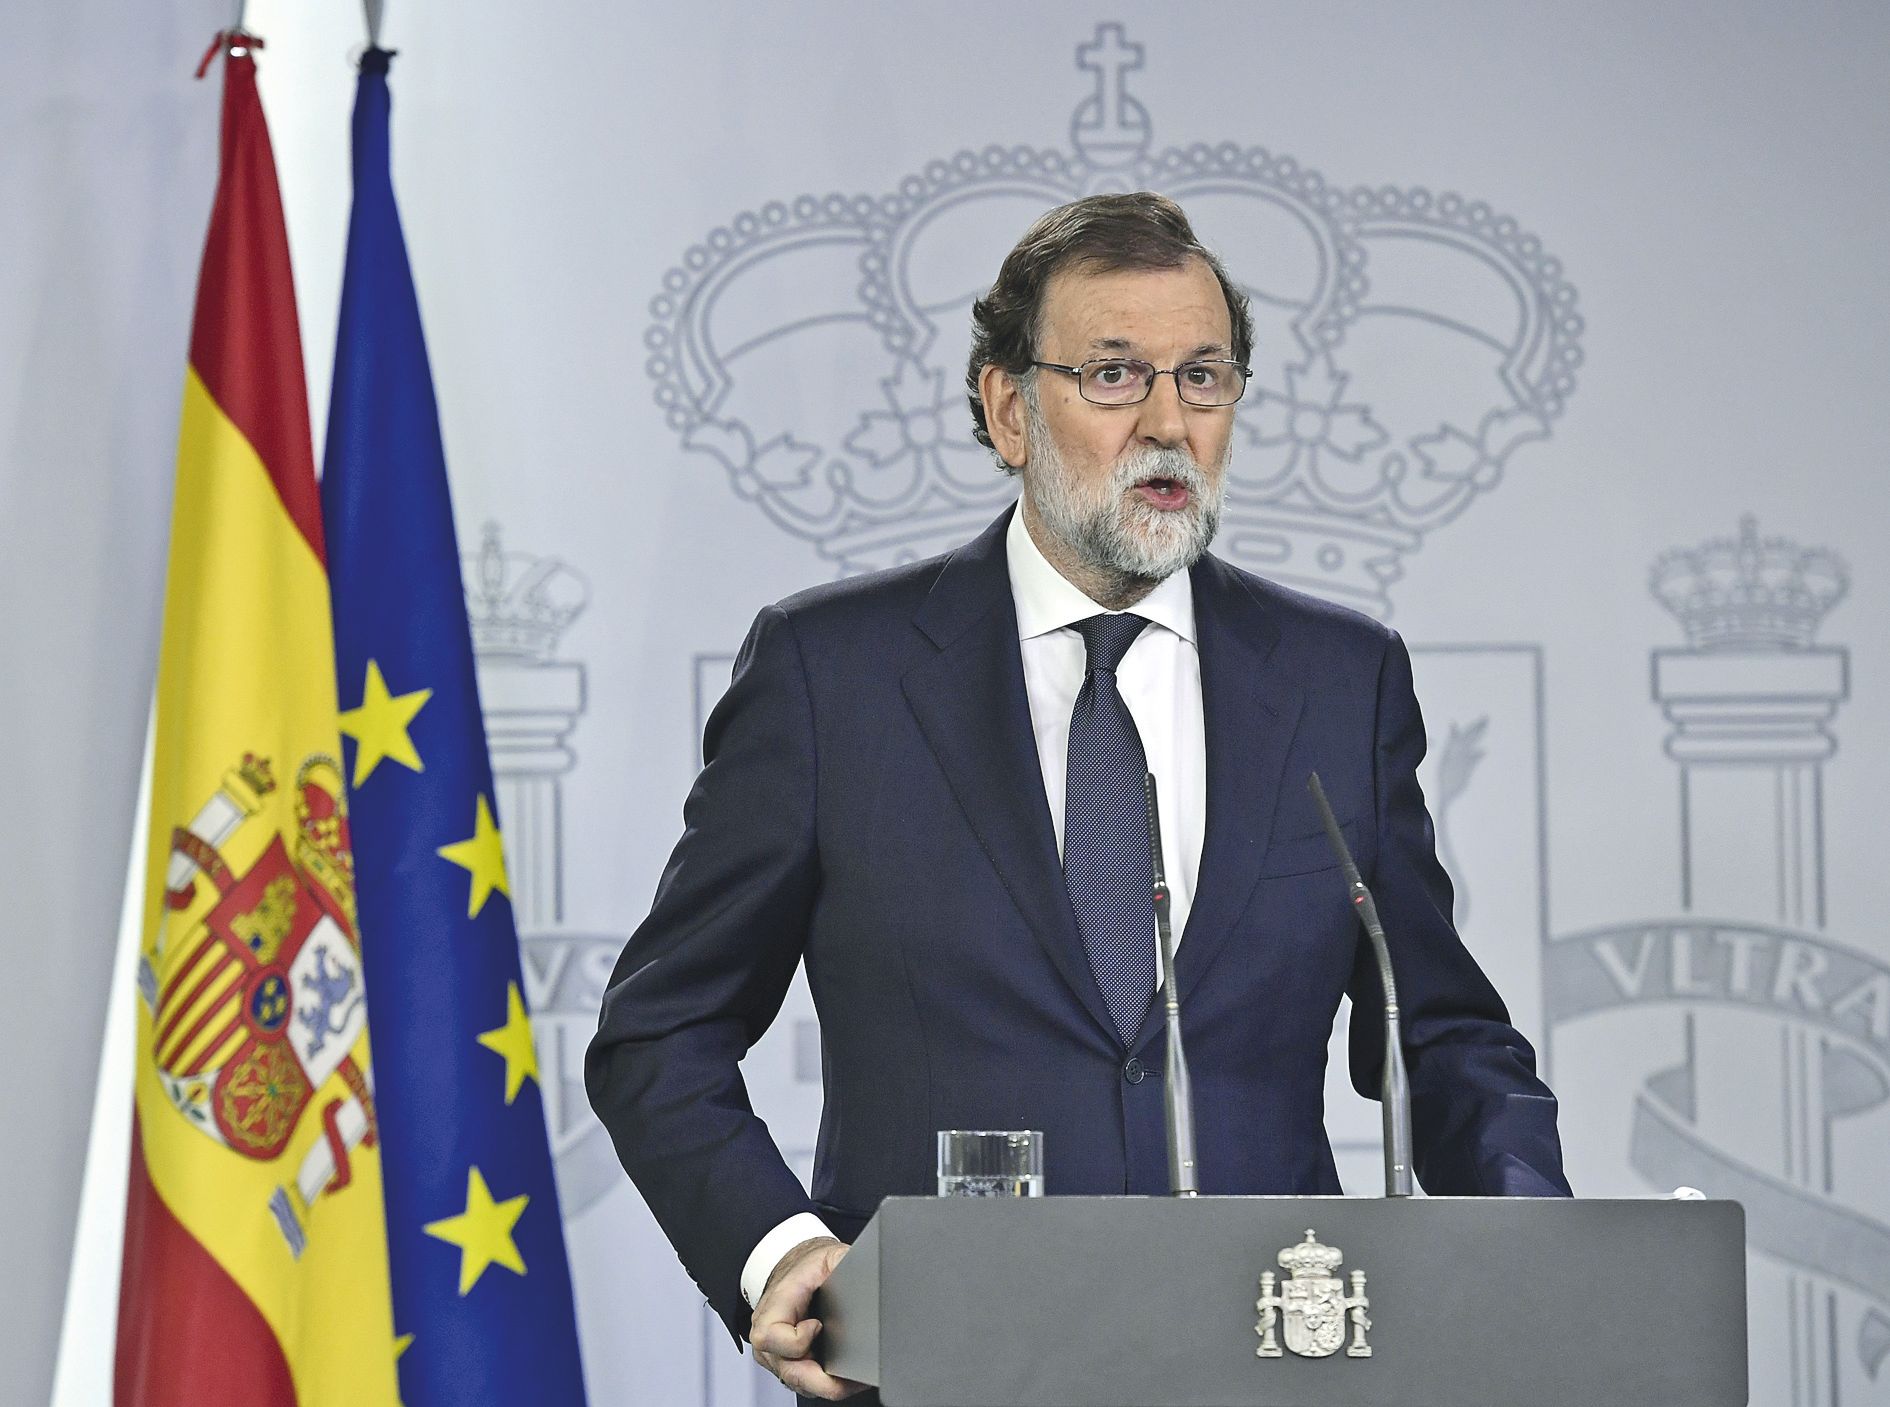 Mariano Rajoy, le Premier ministre, au pouvoir depuisfin 2011, conteste les arguments des séparatistes.